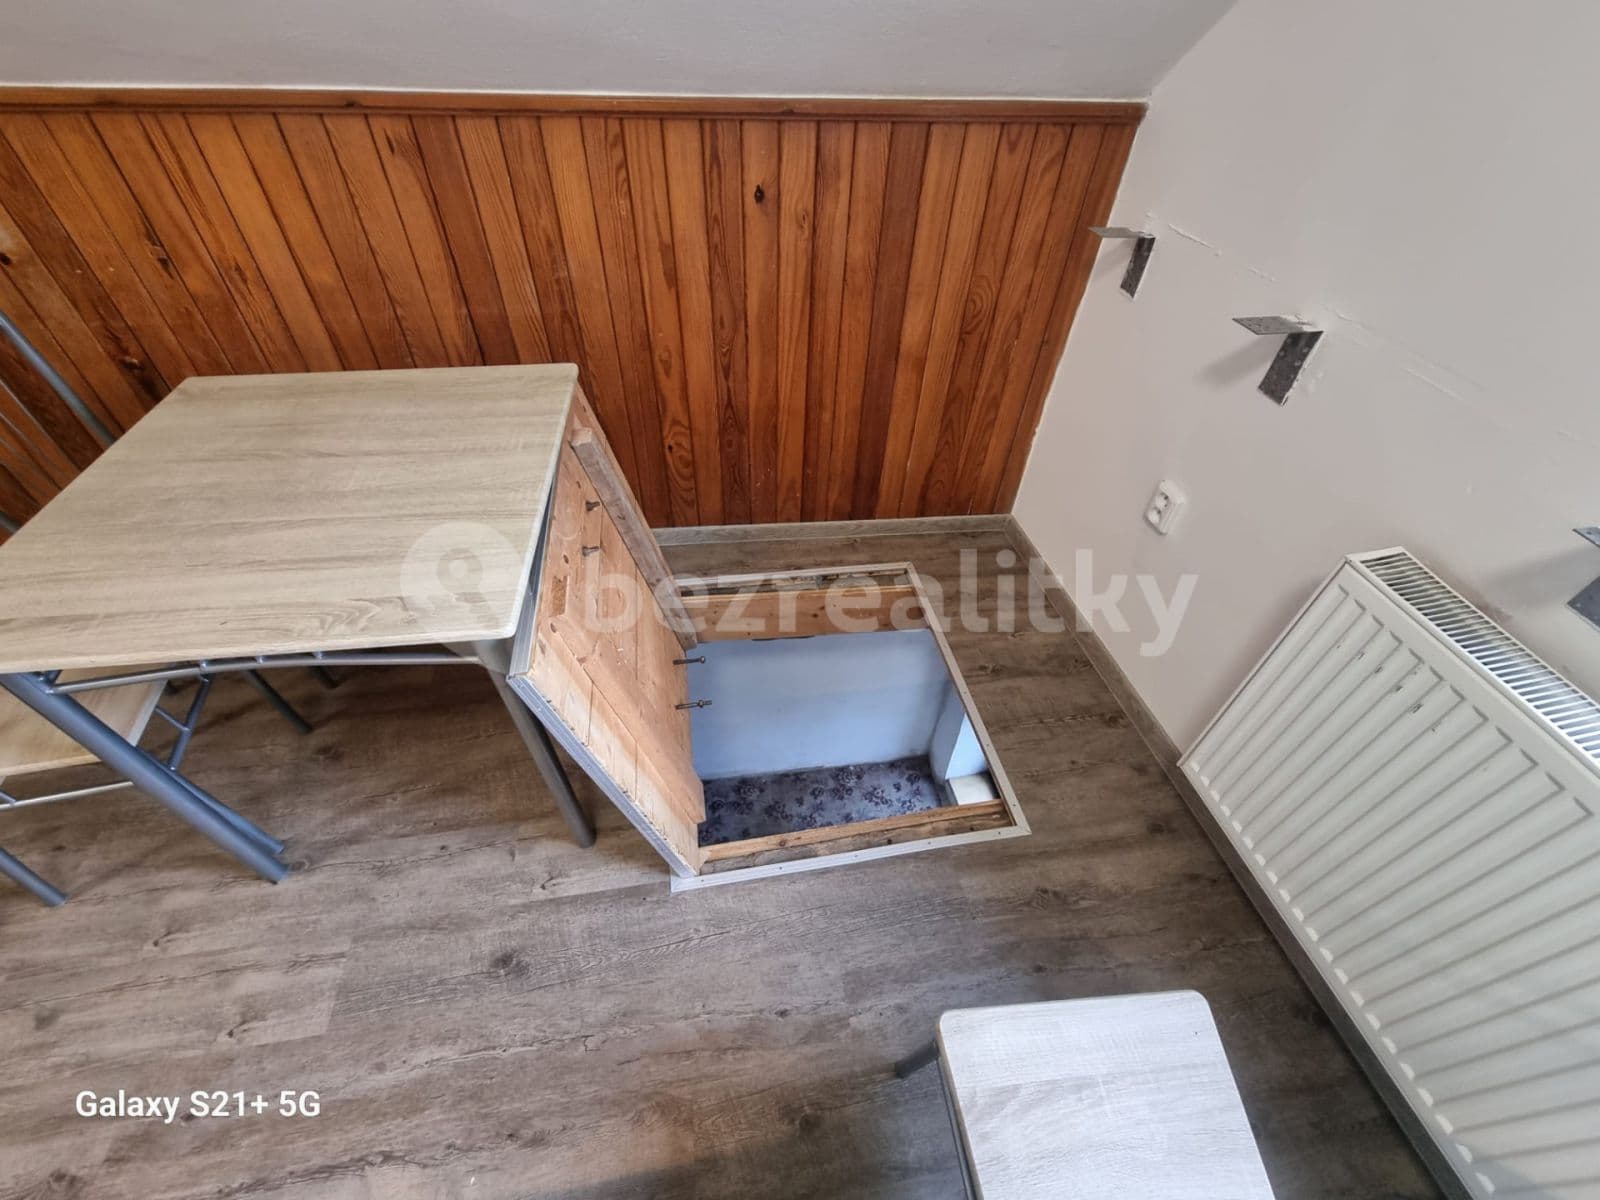 2 bedroom with open-plan kitchen flat to rent, 55 m², Dolany, Středočeský Region